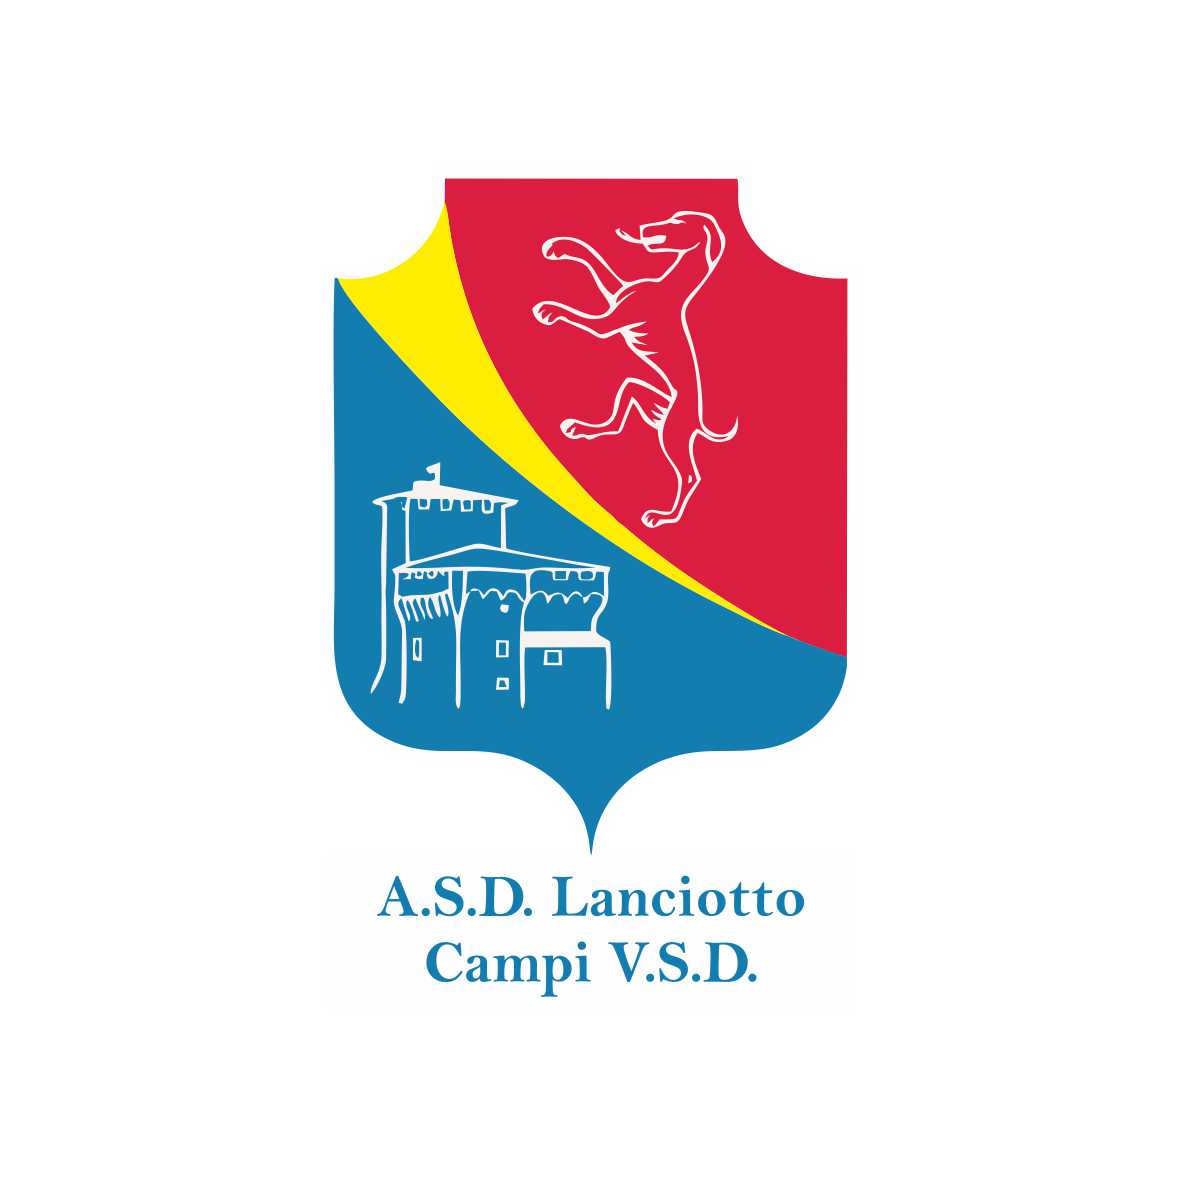 A.S.D. LANCIOTTO CAMPI V.S.D.